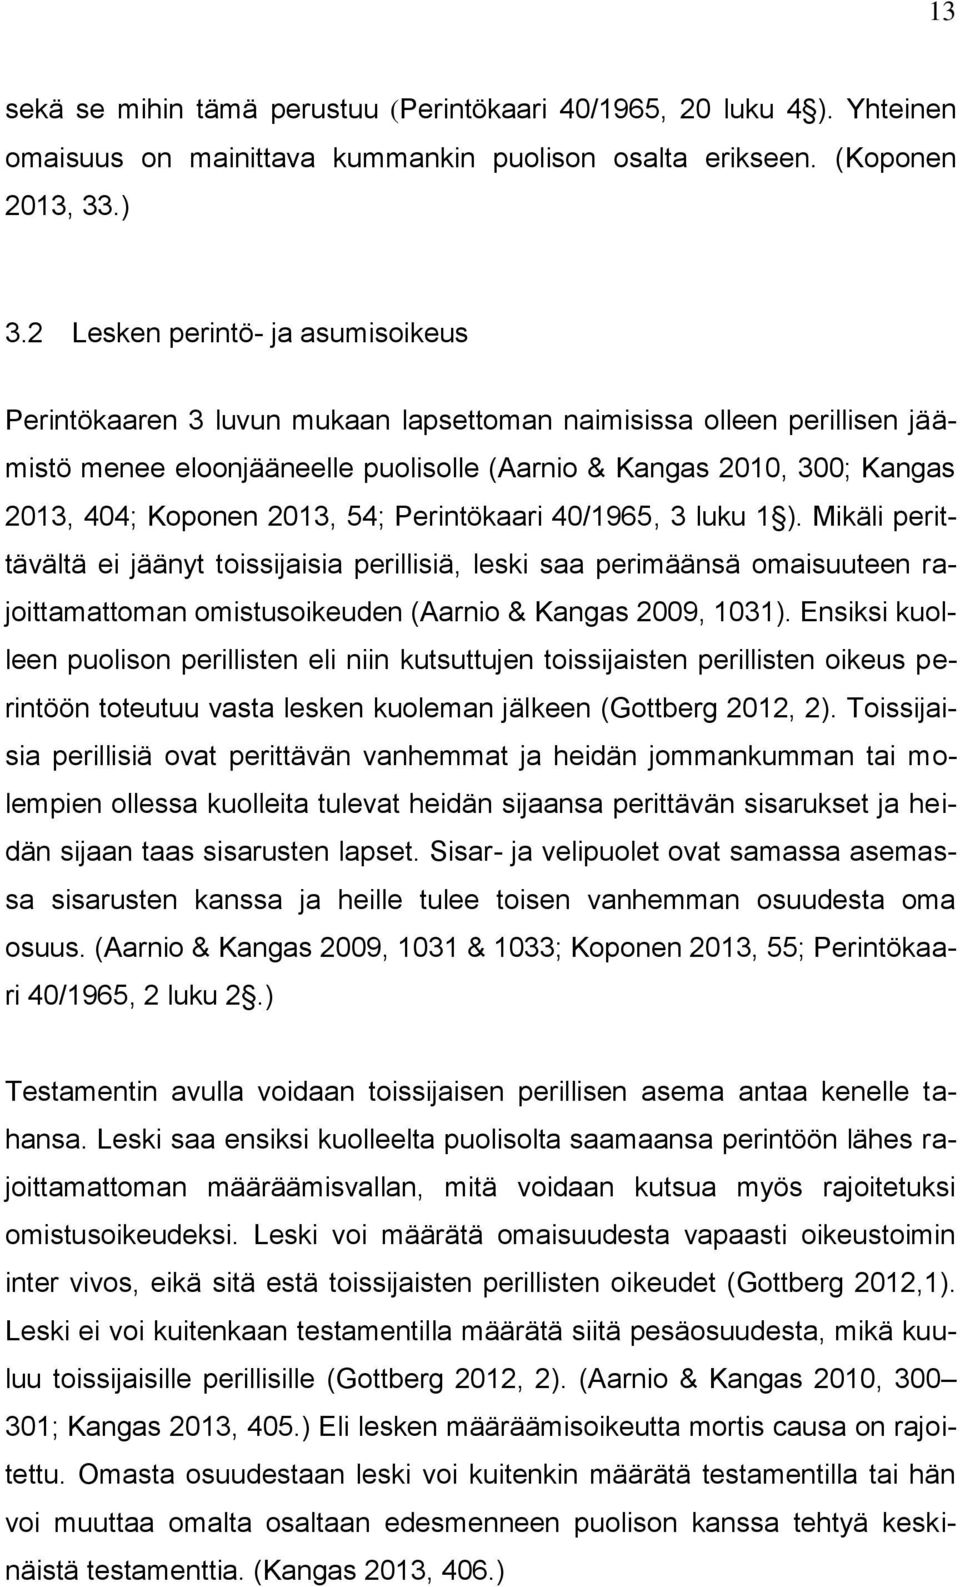 2013, 54; Perintökaari 40/1965, 3 luku 1 ). Mikäli perittävältä ei jäänyt toissijaisia perillisiä, leski saa perimäänsä omaisuuteen rajoittamattoman omistusoikeuden (Aarnio & Kangas 2009, 1031).